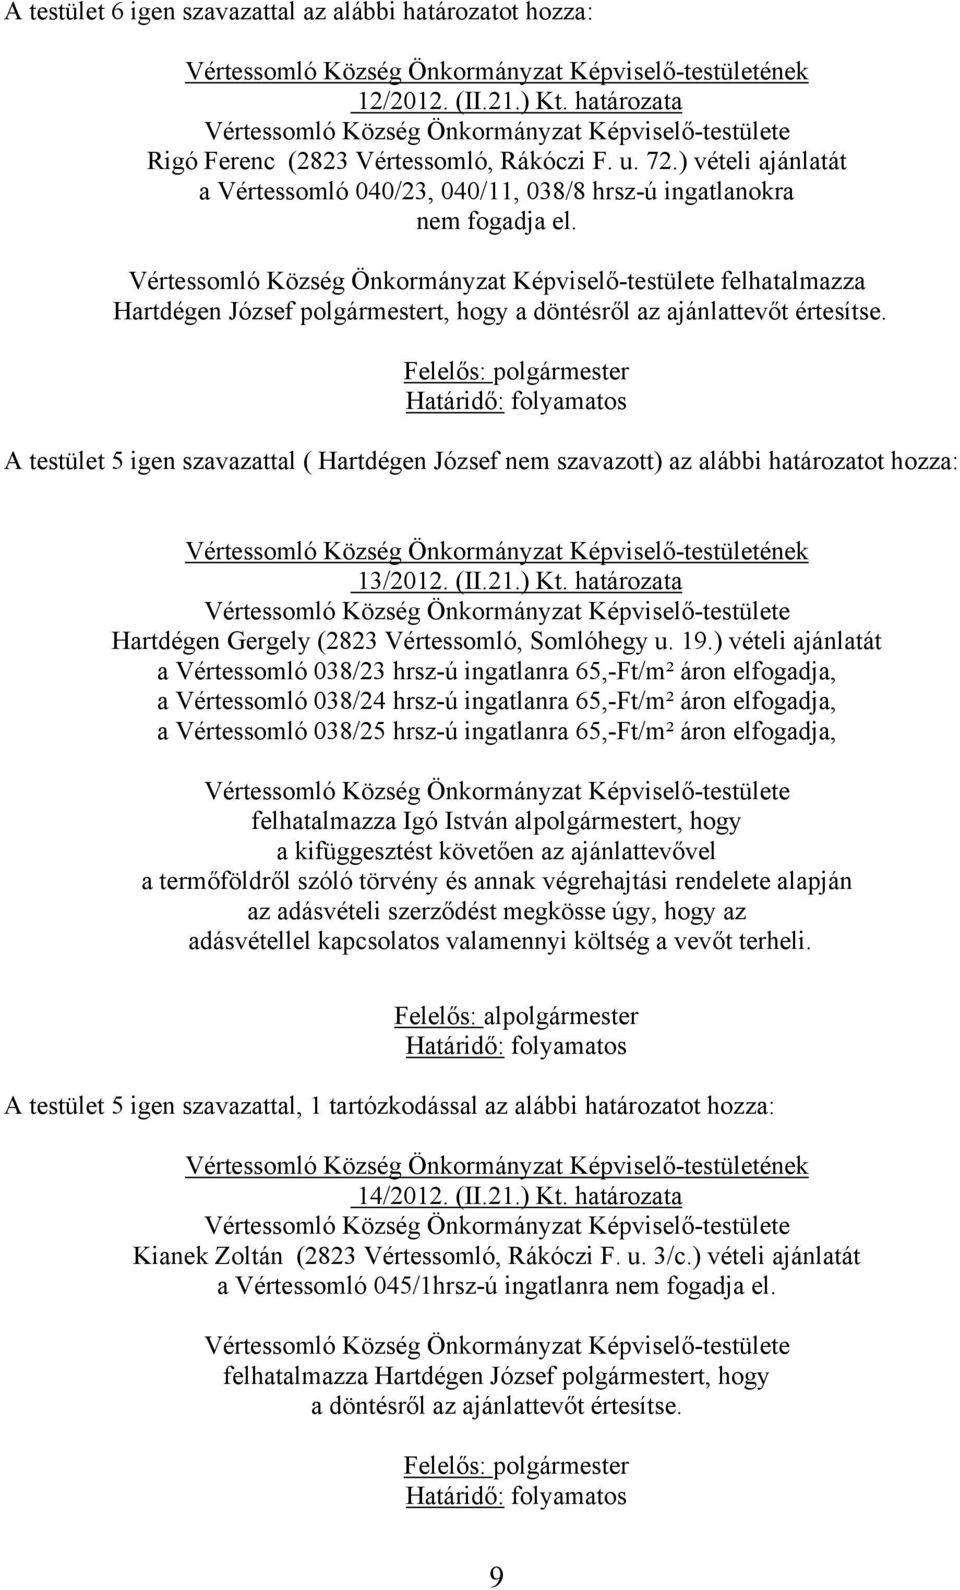 A testület 5 igen szavazattal ( Hartdégen József nem szavazott) az alábbi határozatot hozza: 13/2012. (II.21.) Kt. határozata Hartdégen Gergely (2823 Vértessomló, Somlóhegy u. 19.